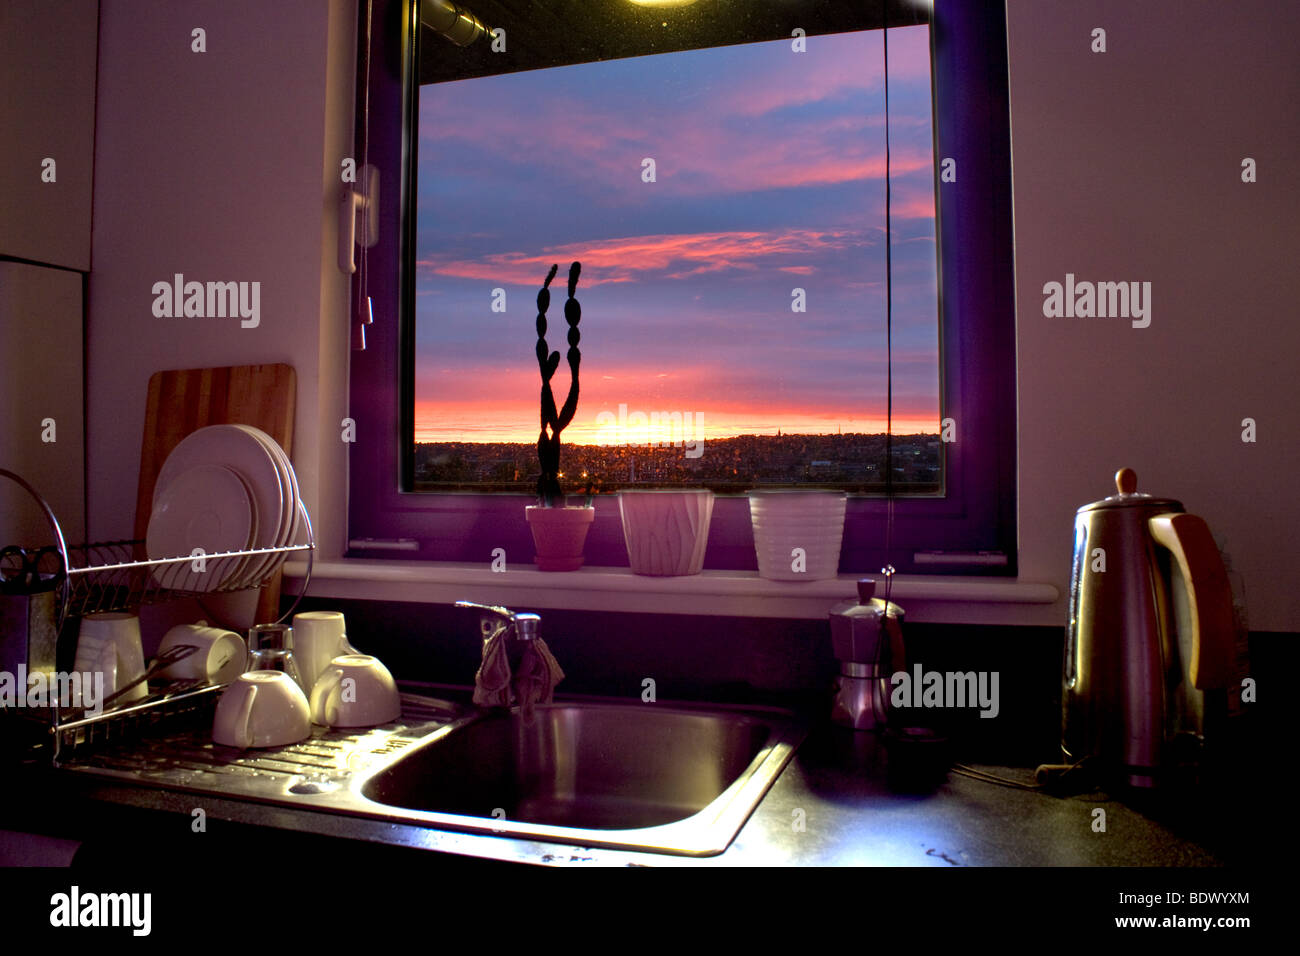 HDR coucher du soleil vu à travers une fenêtre de cuisine Banque D'Images